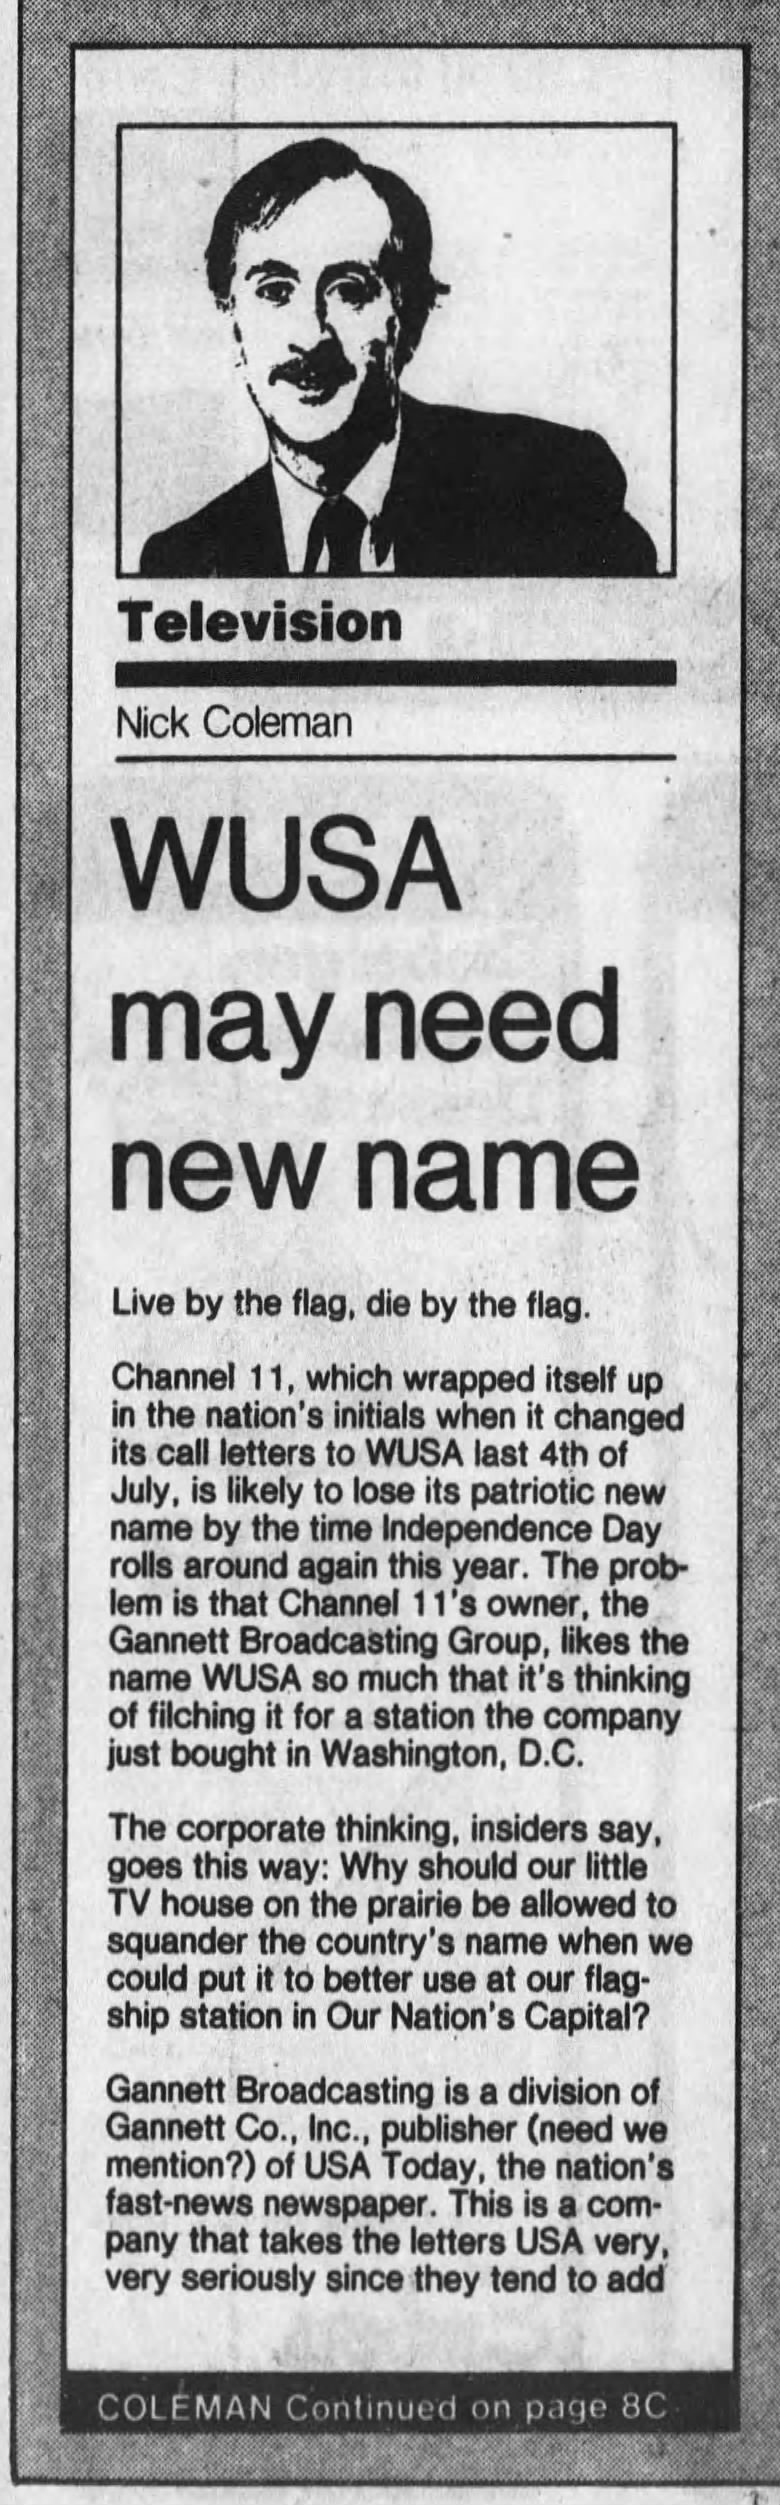 WUSA may need new name